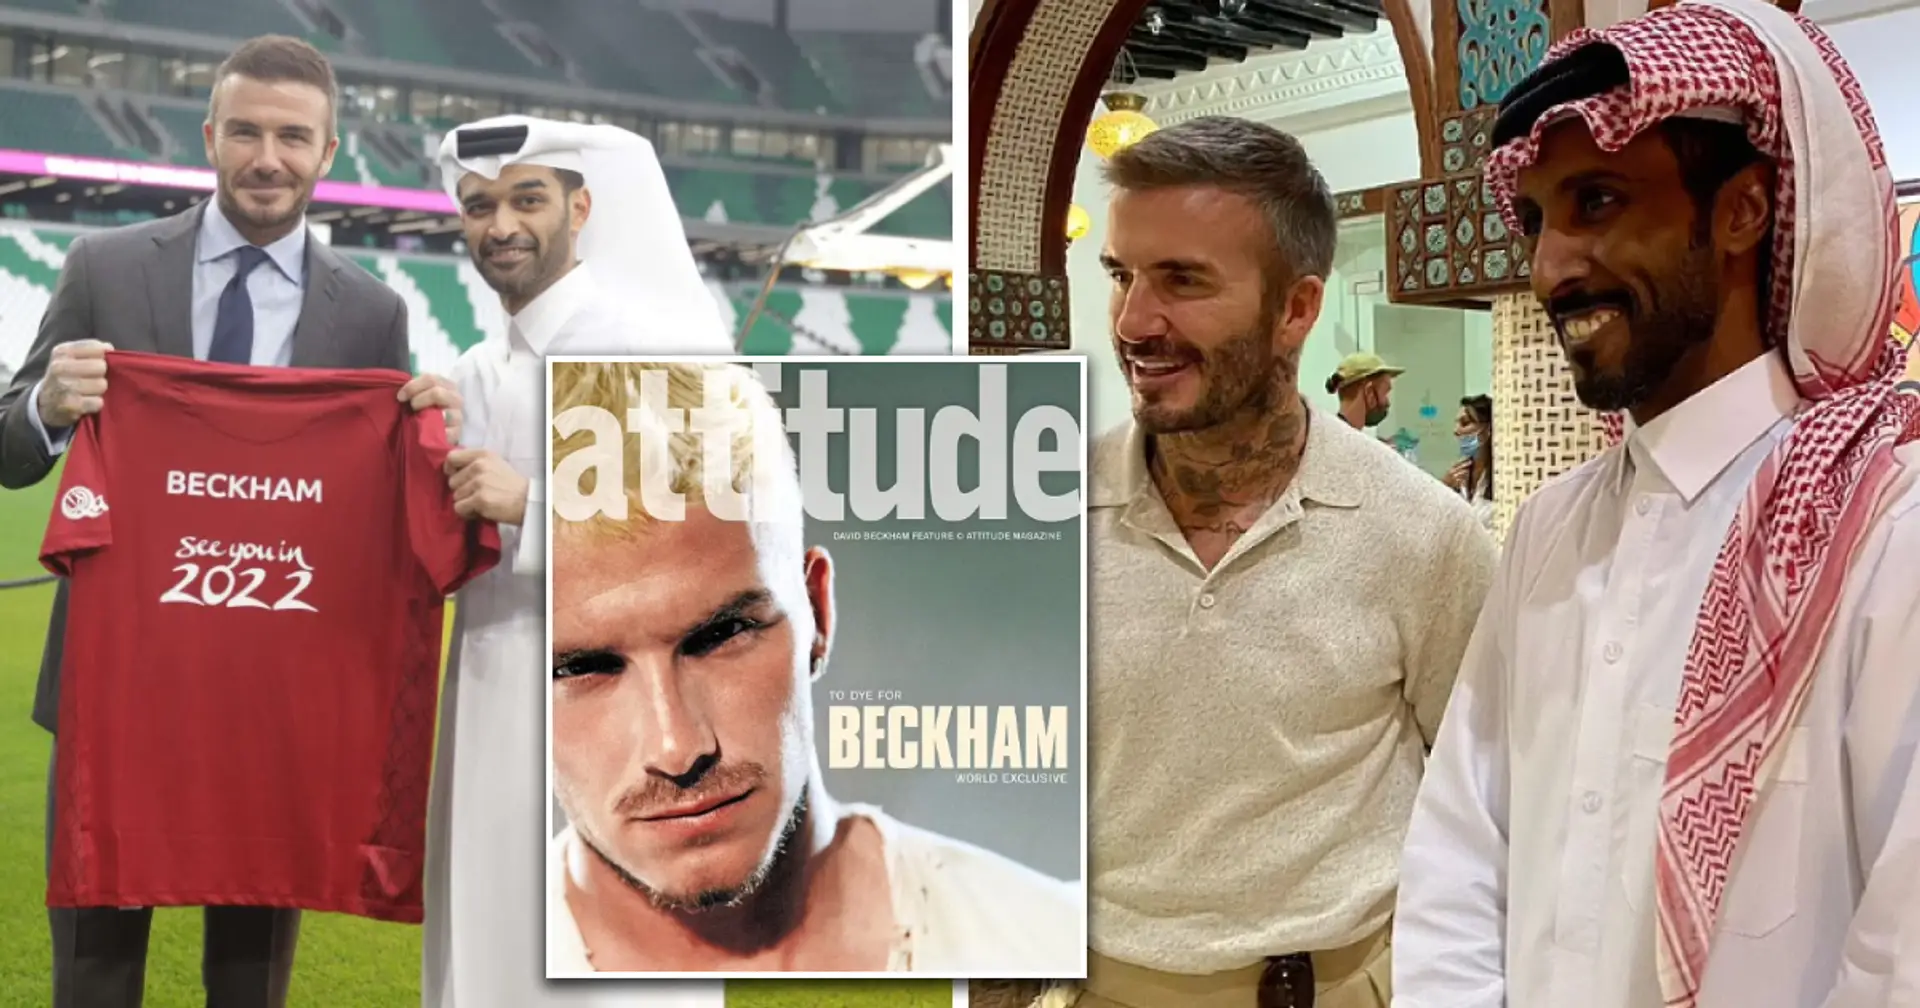 "Je savais qu'il y aurait des questions" : David Beckham s'exprime sur son accord de 125 millions de livres sterling avec le Qatar